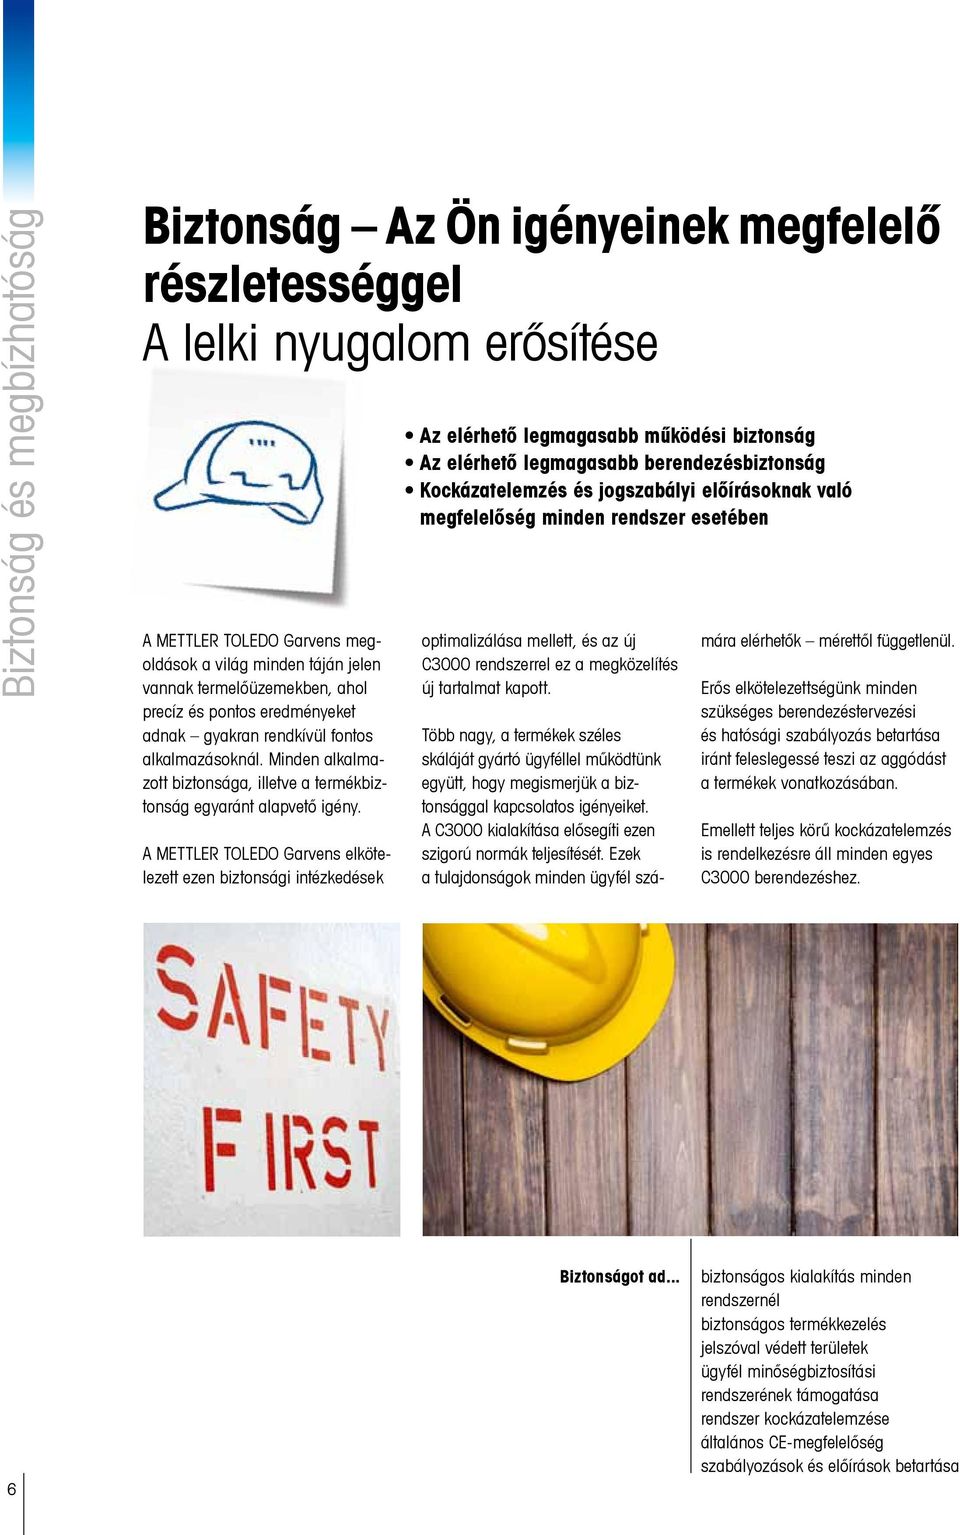 A METTLER TOLEDO Garvens elkötelezett ezen biztonsági intézkedések Az elérhető legmagasabb működési biztonság Az elérhető legmagasabb berendezésbiztonság Kockázatelemzés és jogszabályi előírásoknak